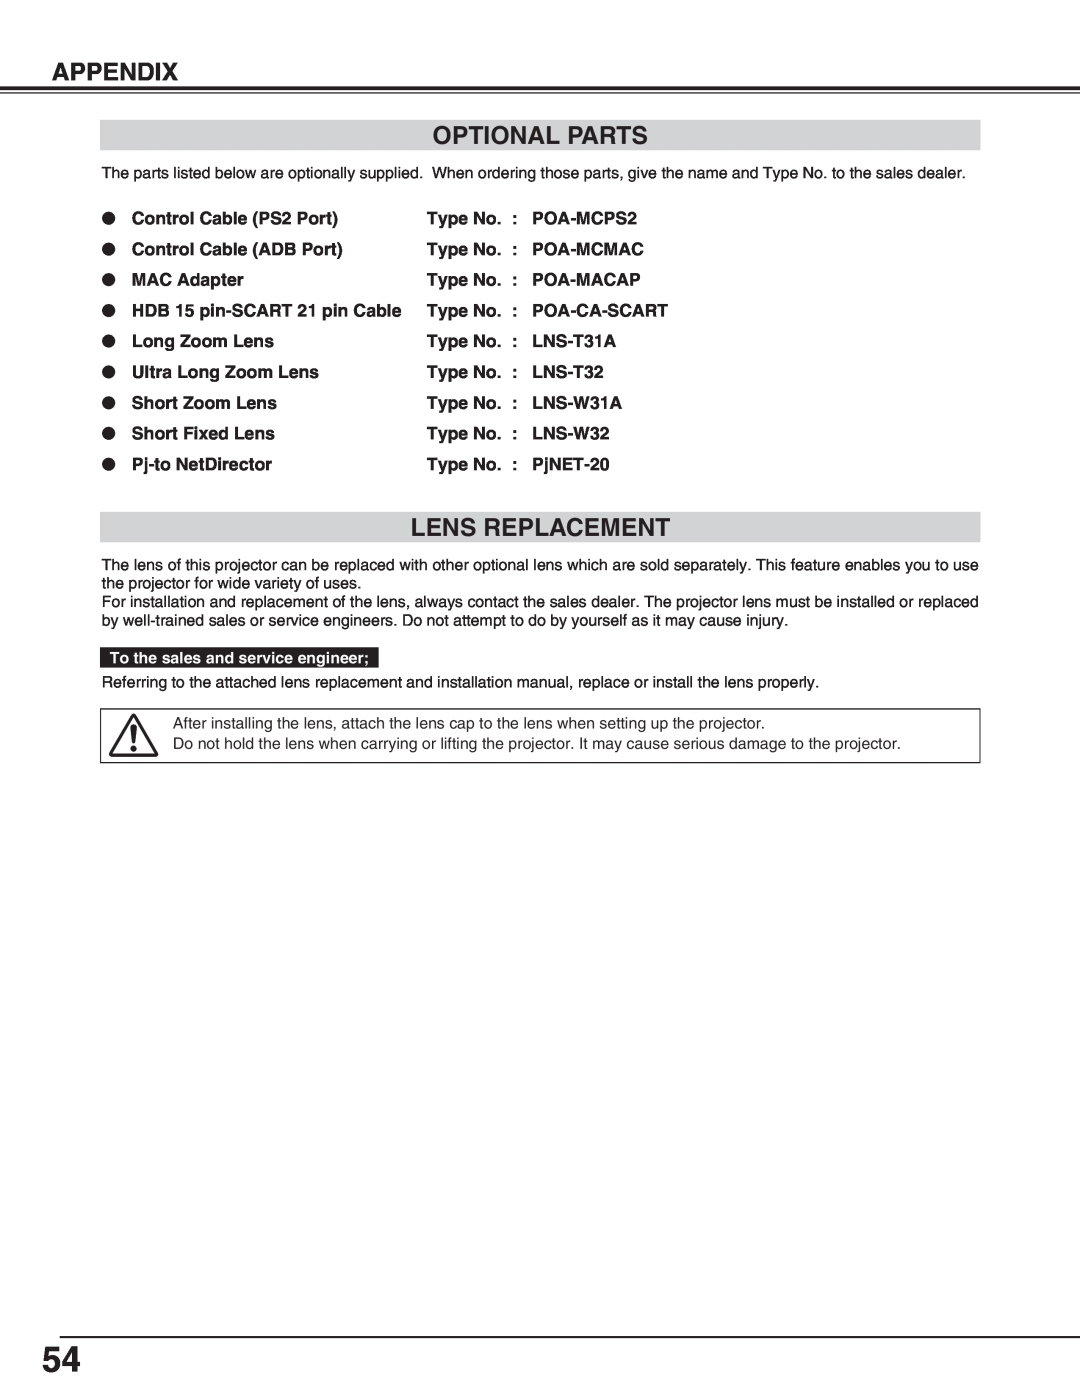 Eiki LC-X70 instruction manual Appendix Optional Parts, Lens Replacement 